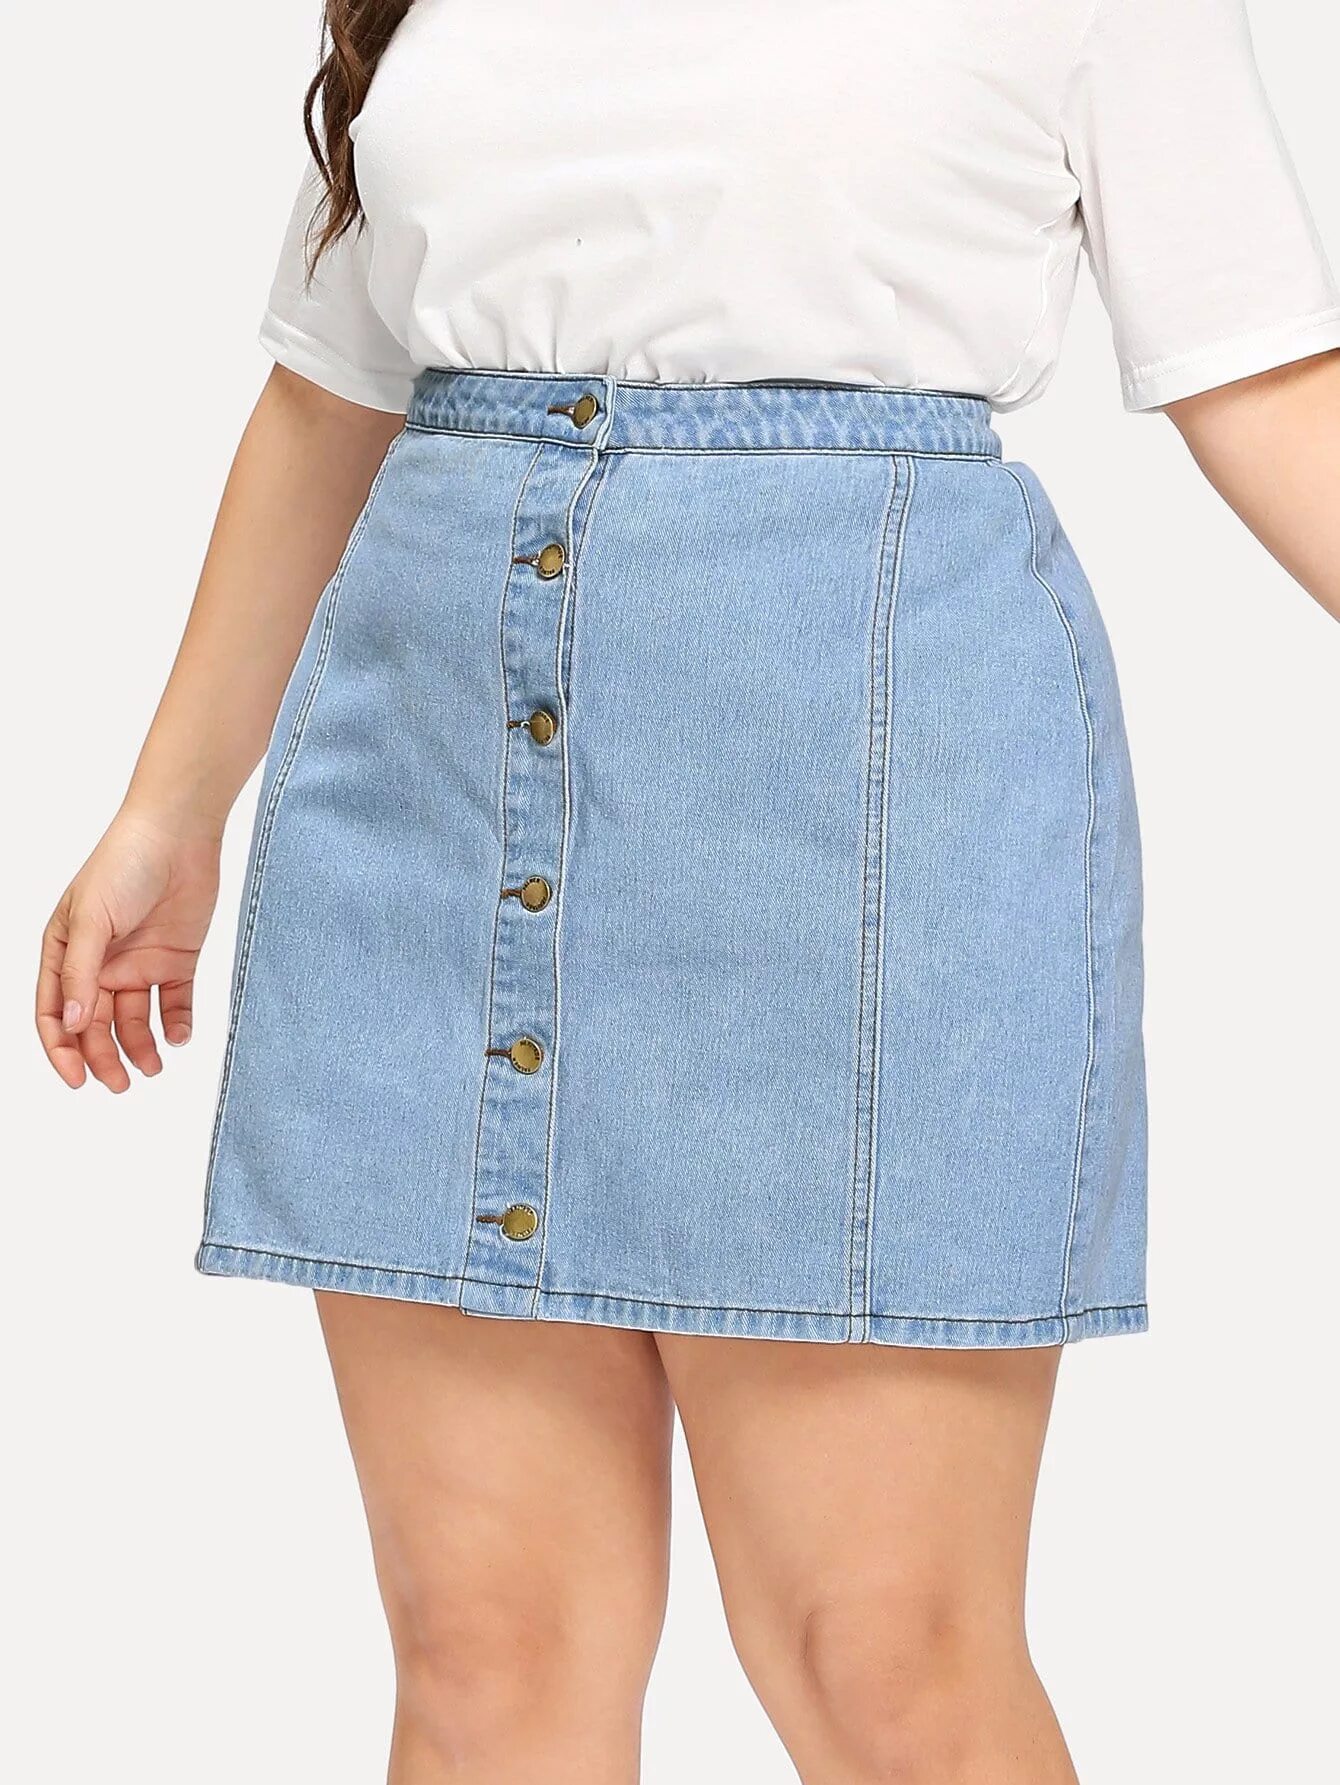 Валберис джинсовые юбки женские. Юбка джинсовая 2021 плюс сайз. Джинсовая юбка миди плюс сайз. Джинсовые юбки для полных.